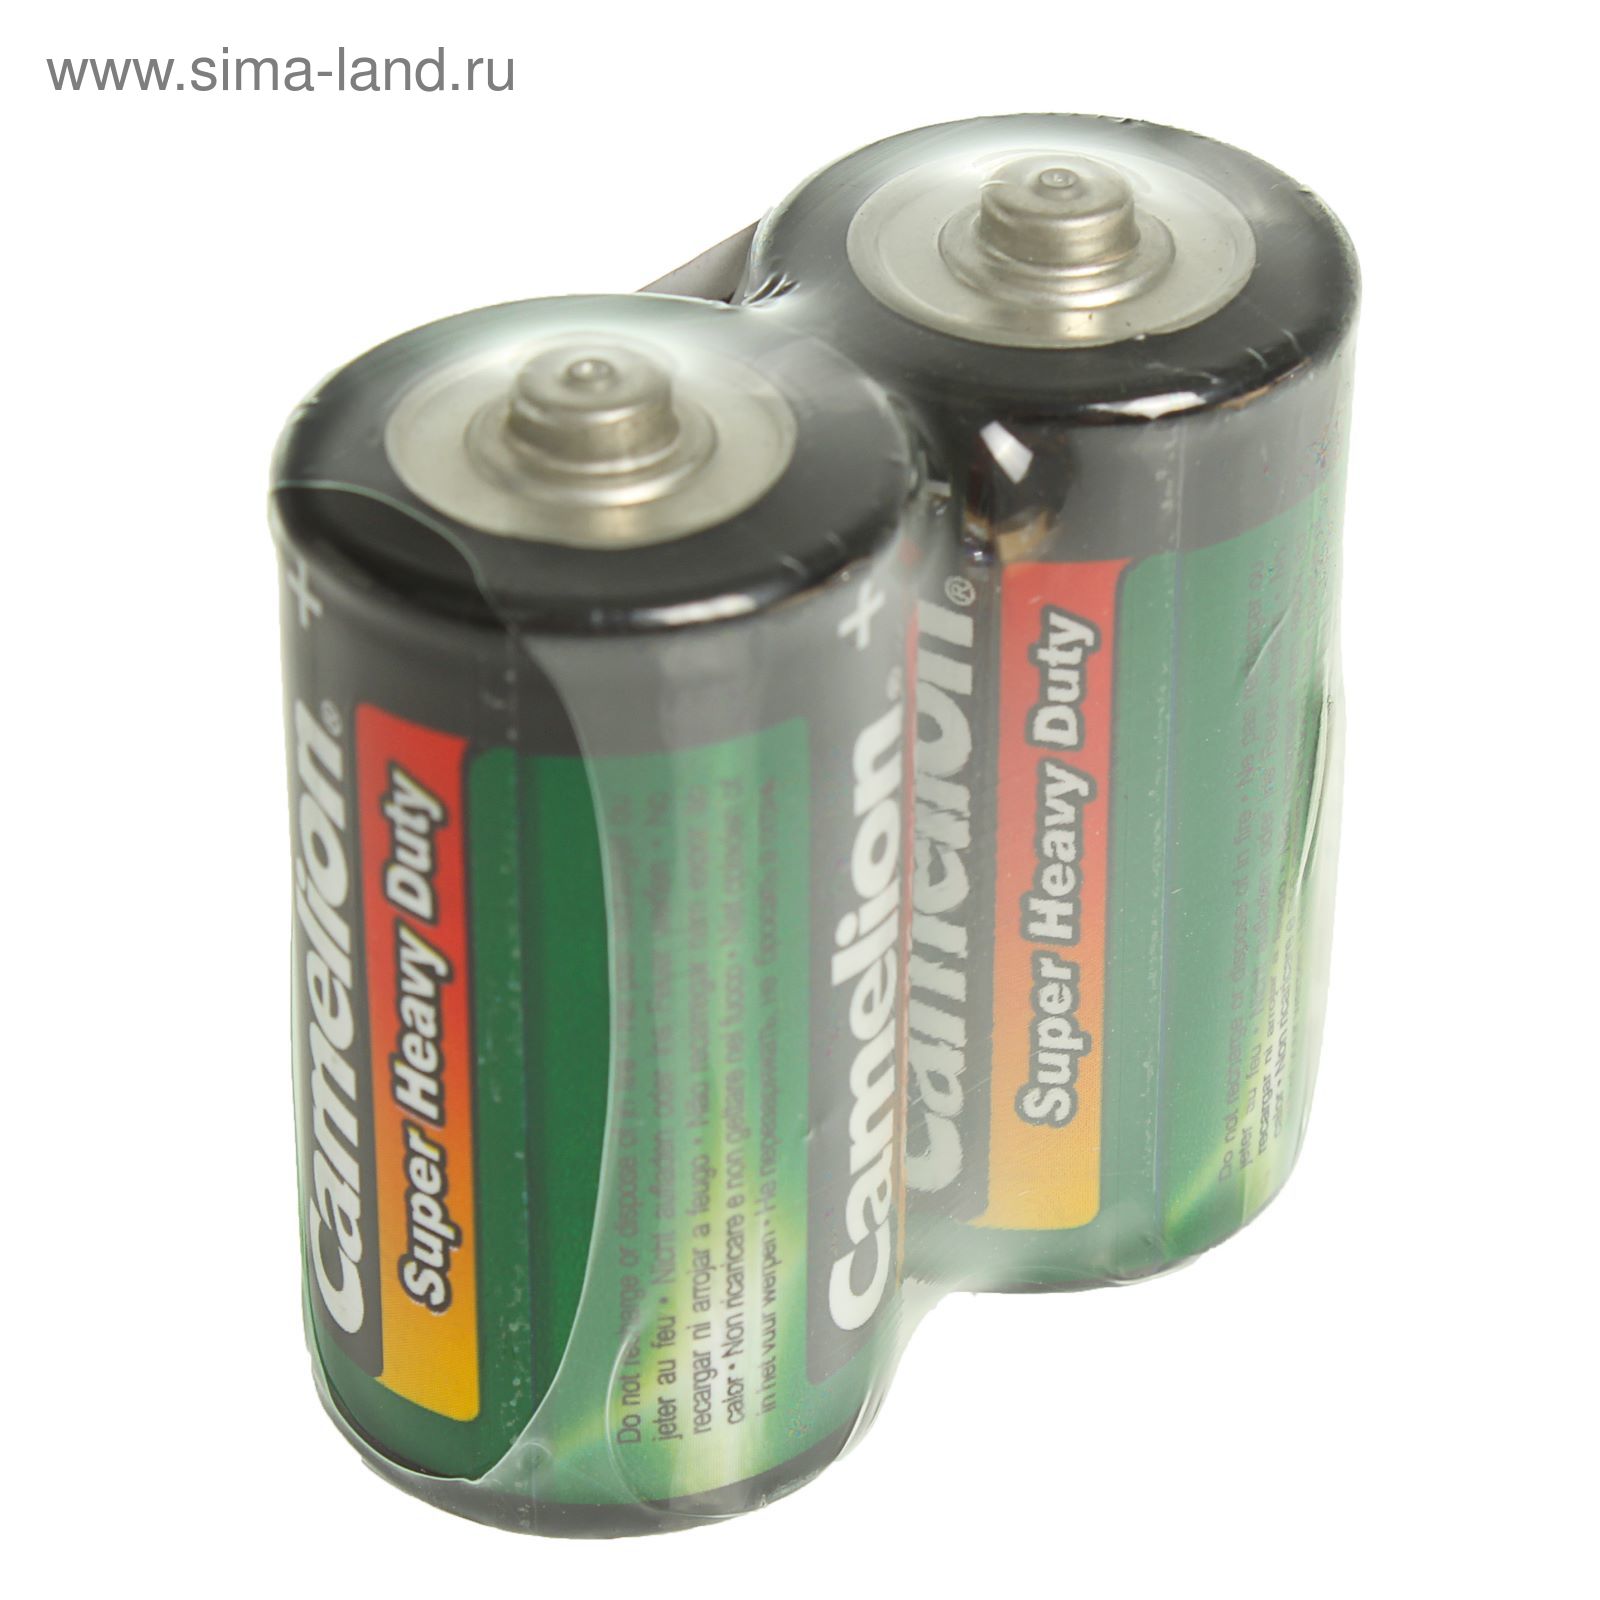 Батарейки 14c r14s Size c 1.5v